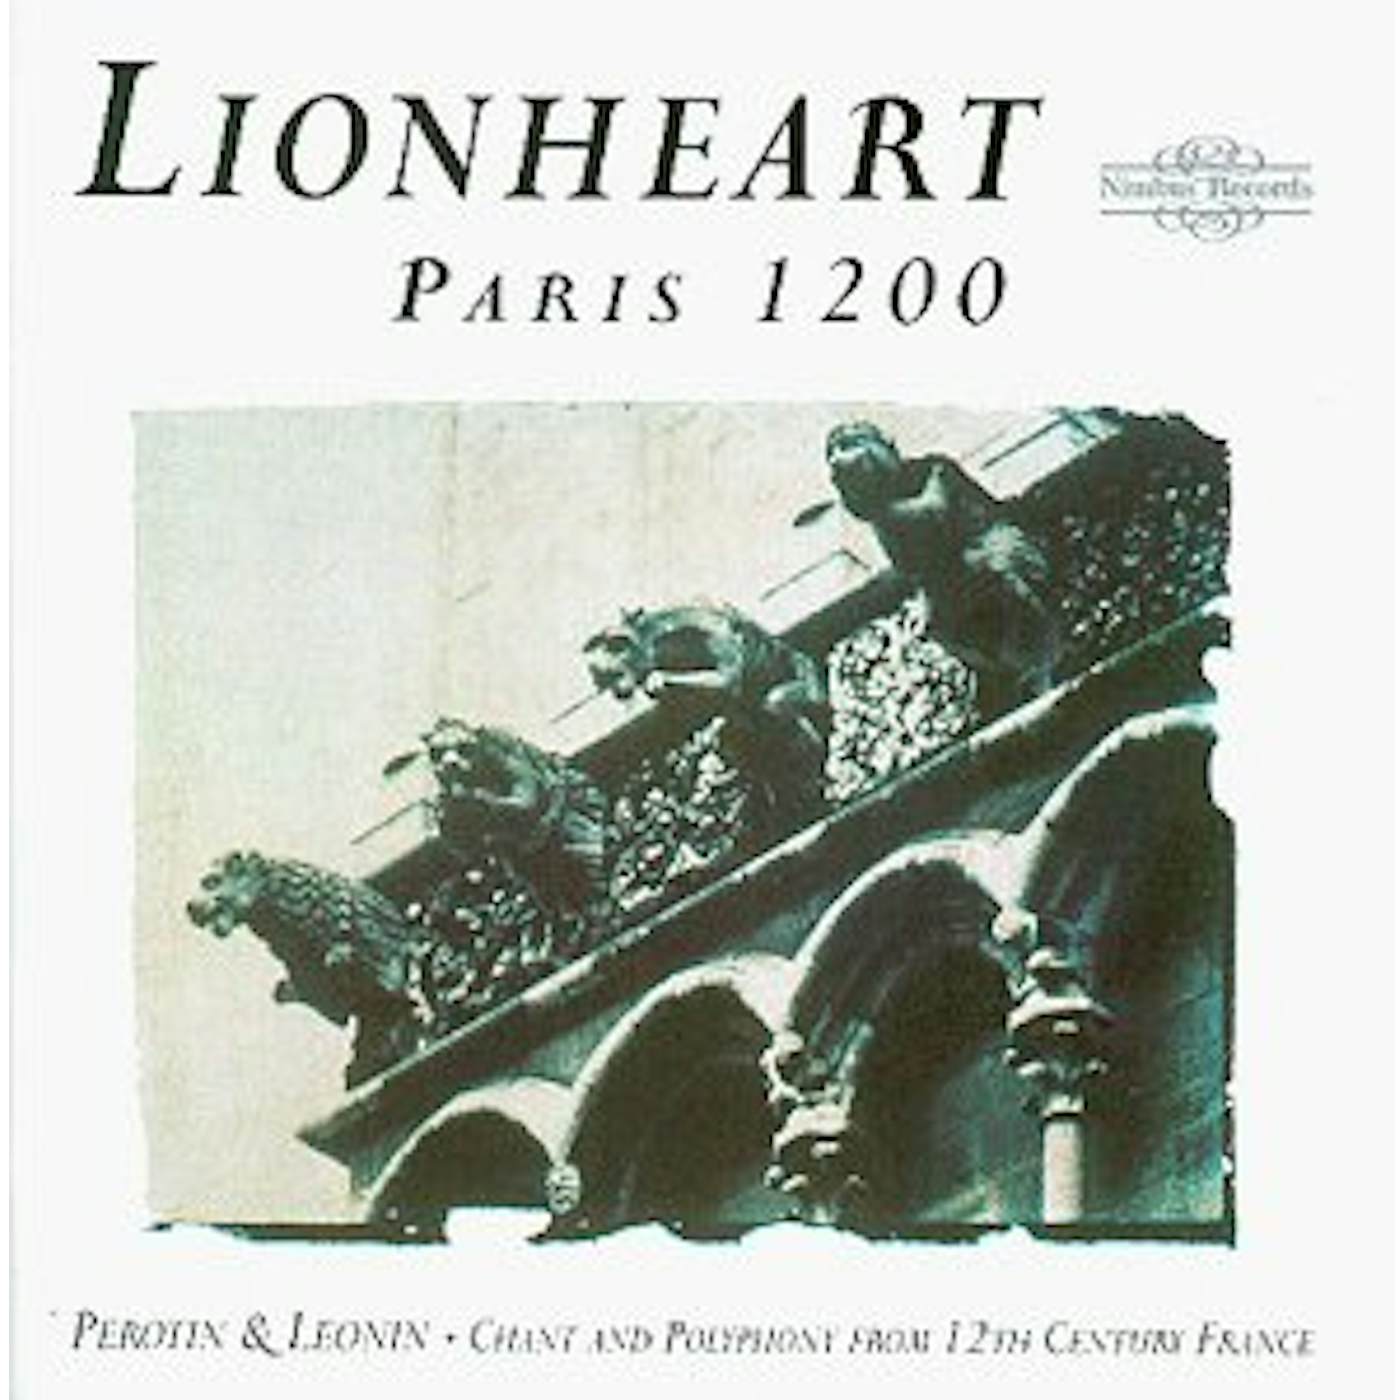 Lionheart PARIS 1200 CD